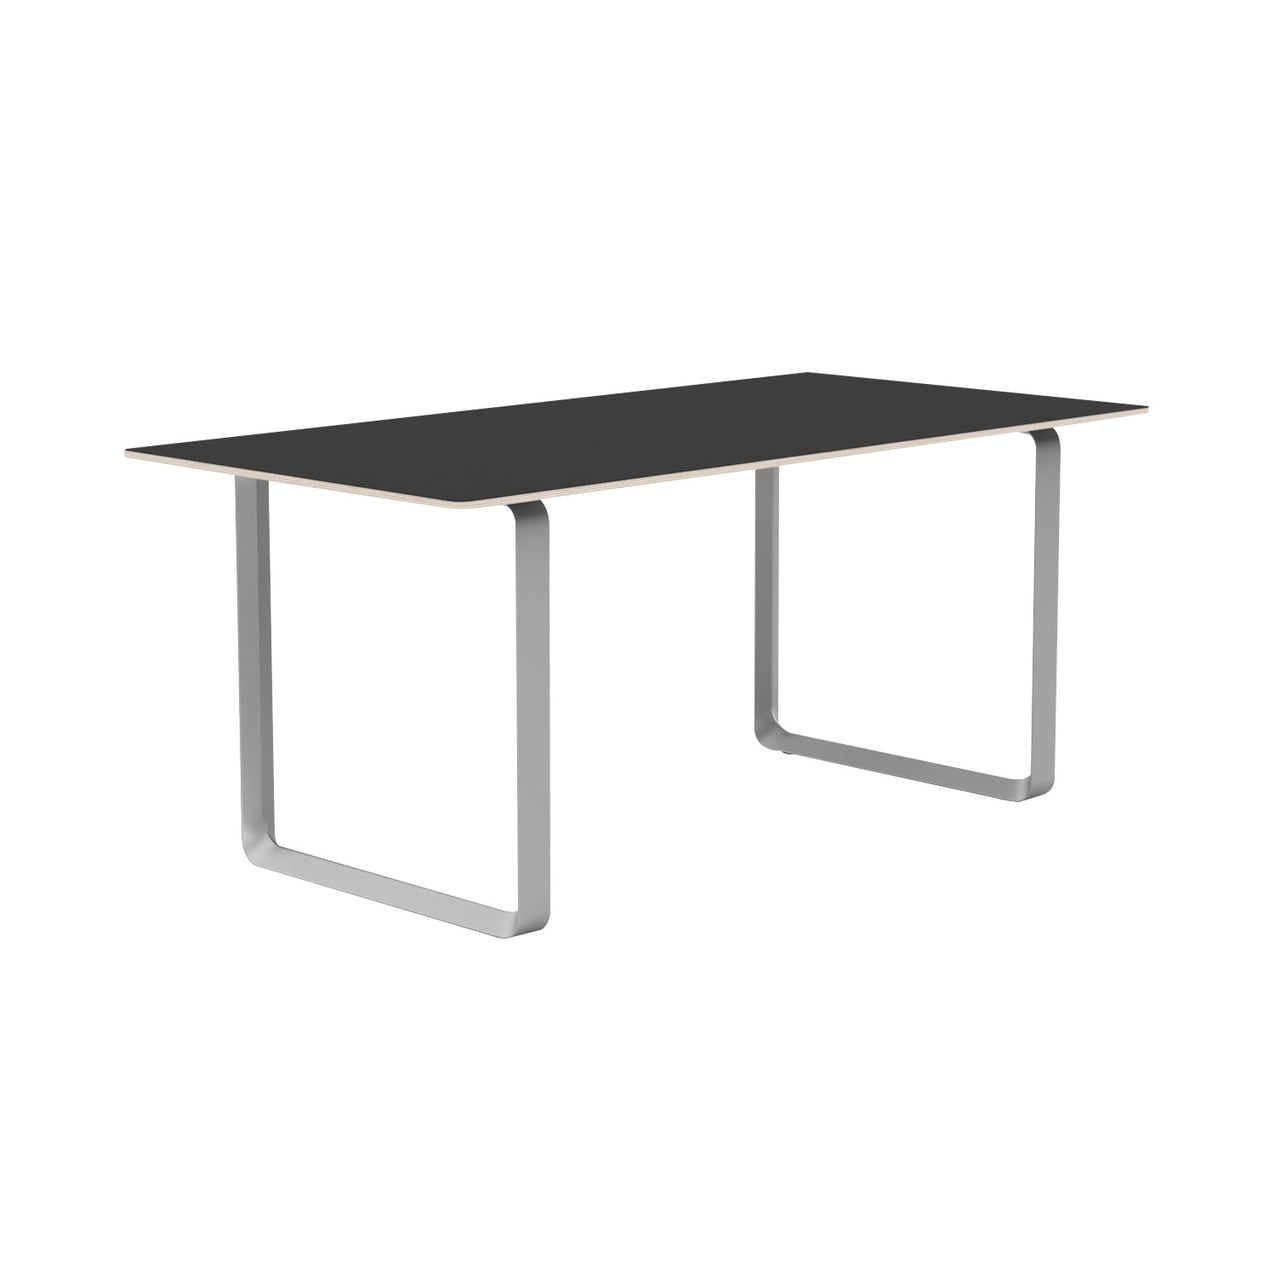 70/70 Table: Small + Black Linoleum + Grey